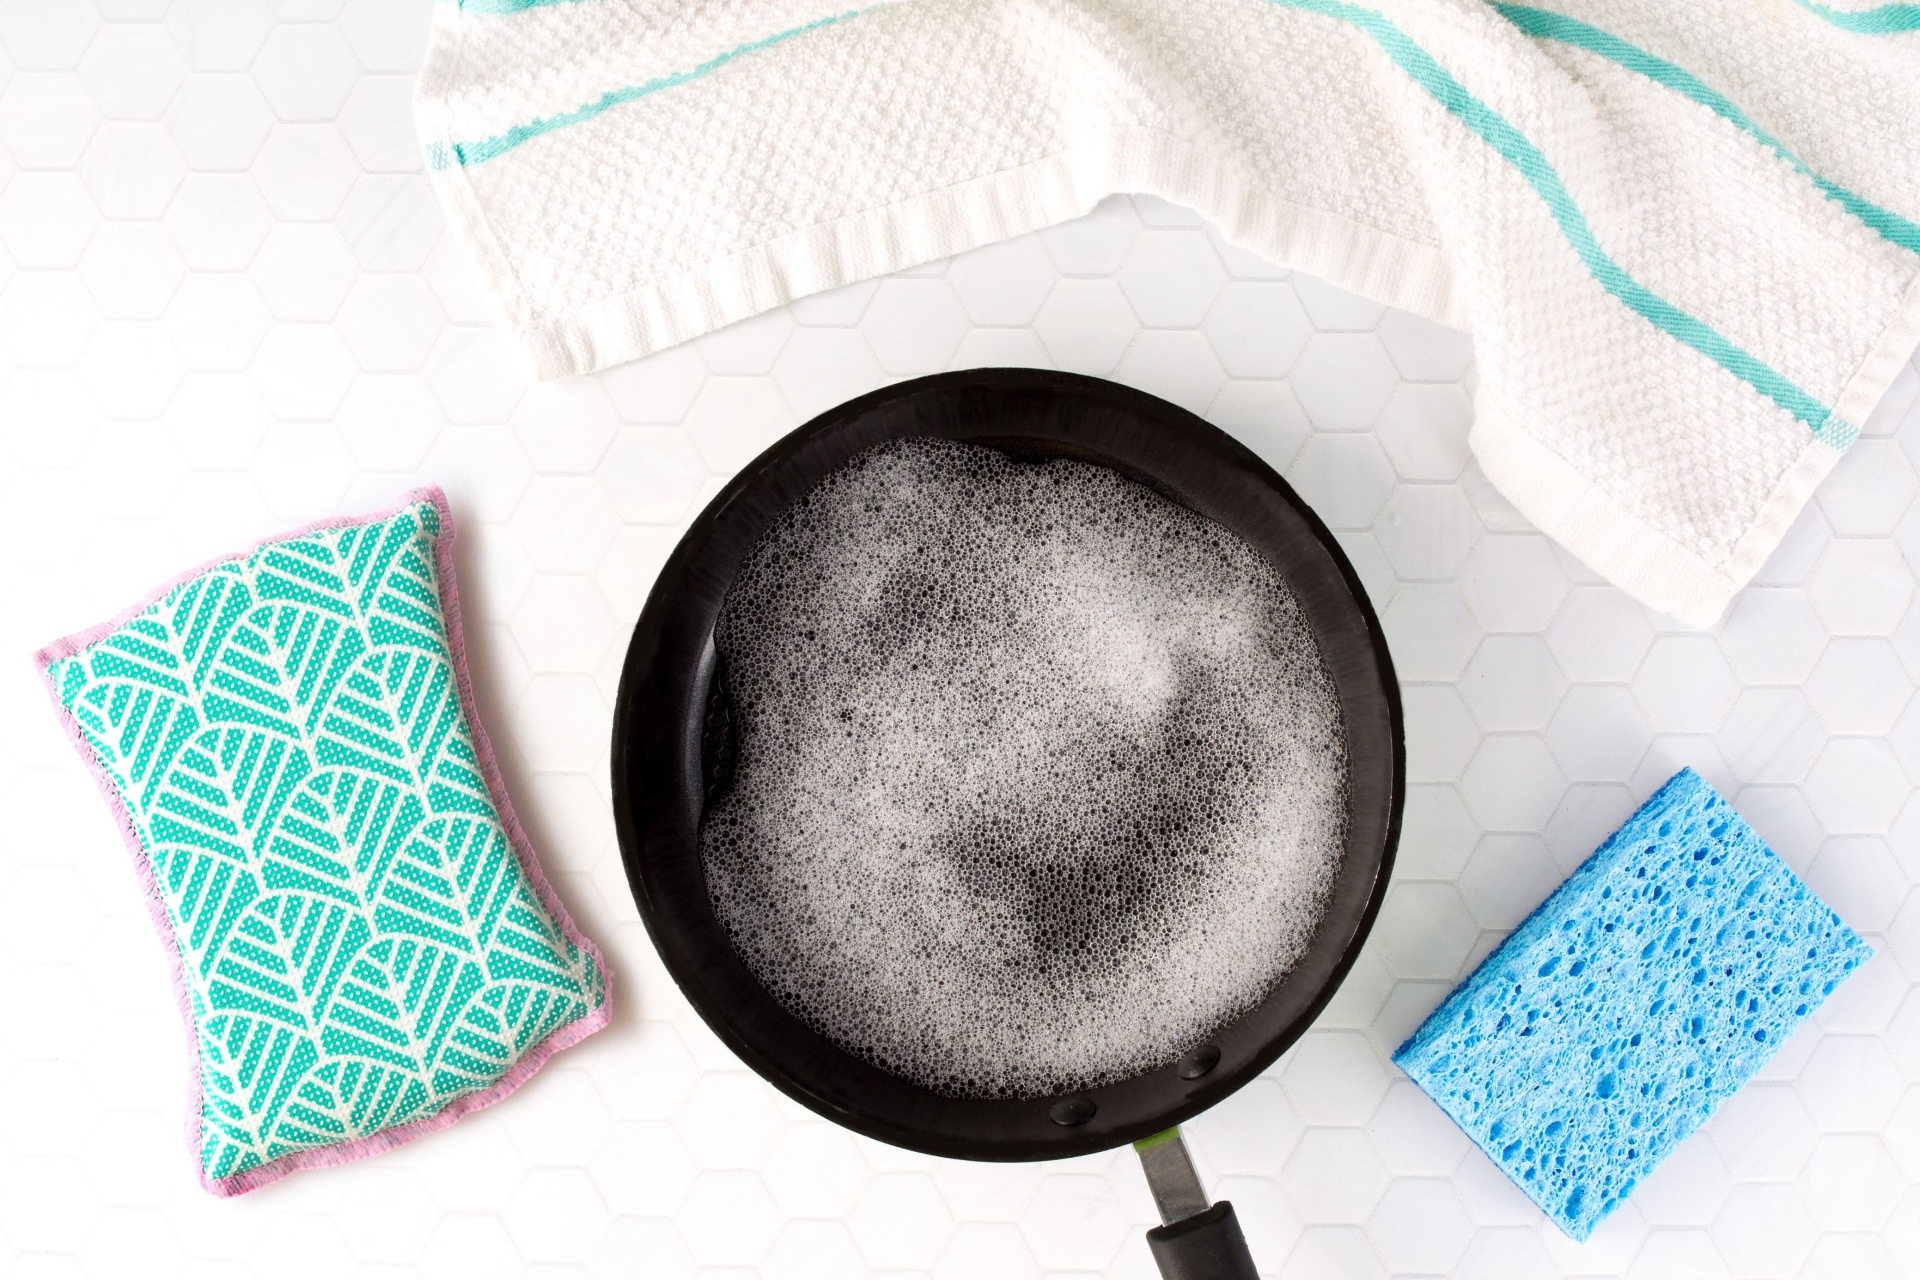 Dụng cụ nấu nướng có lớp chống dính rất tiện dụng, giúp cho công việc nấu nướng thuận tiện hơn.